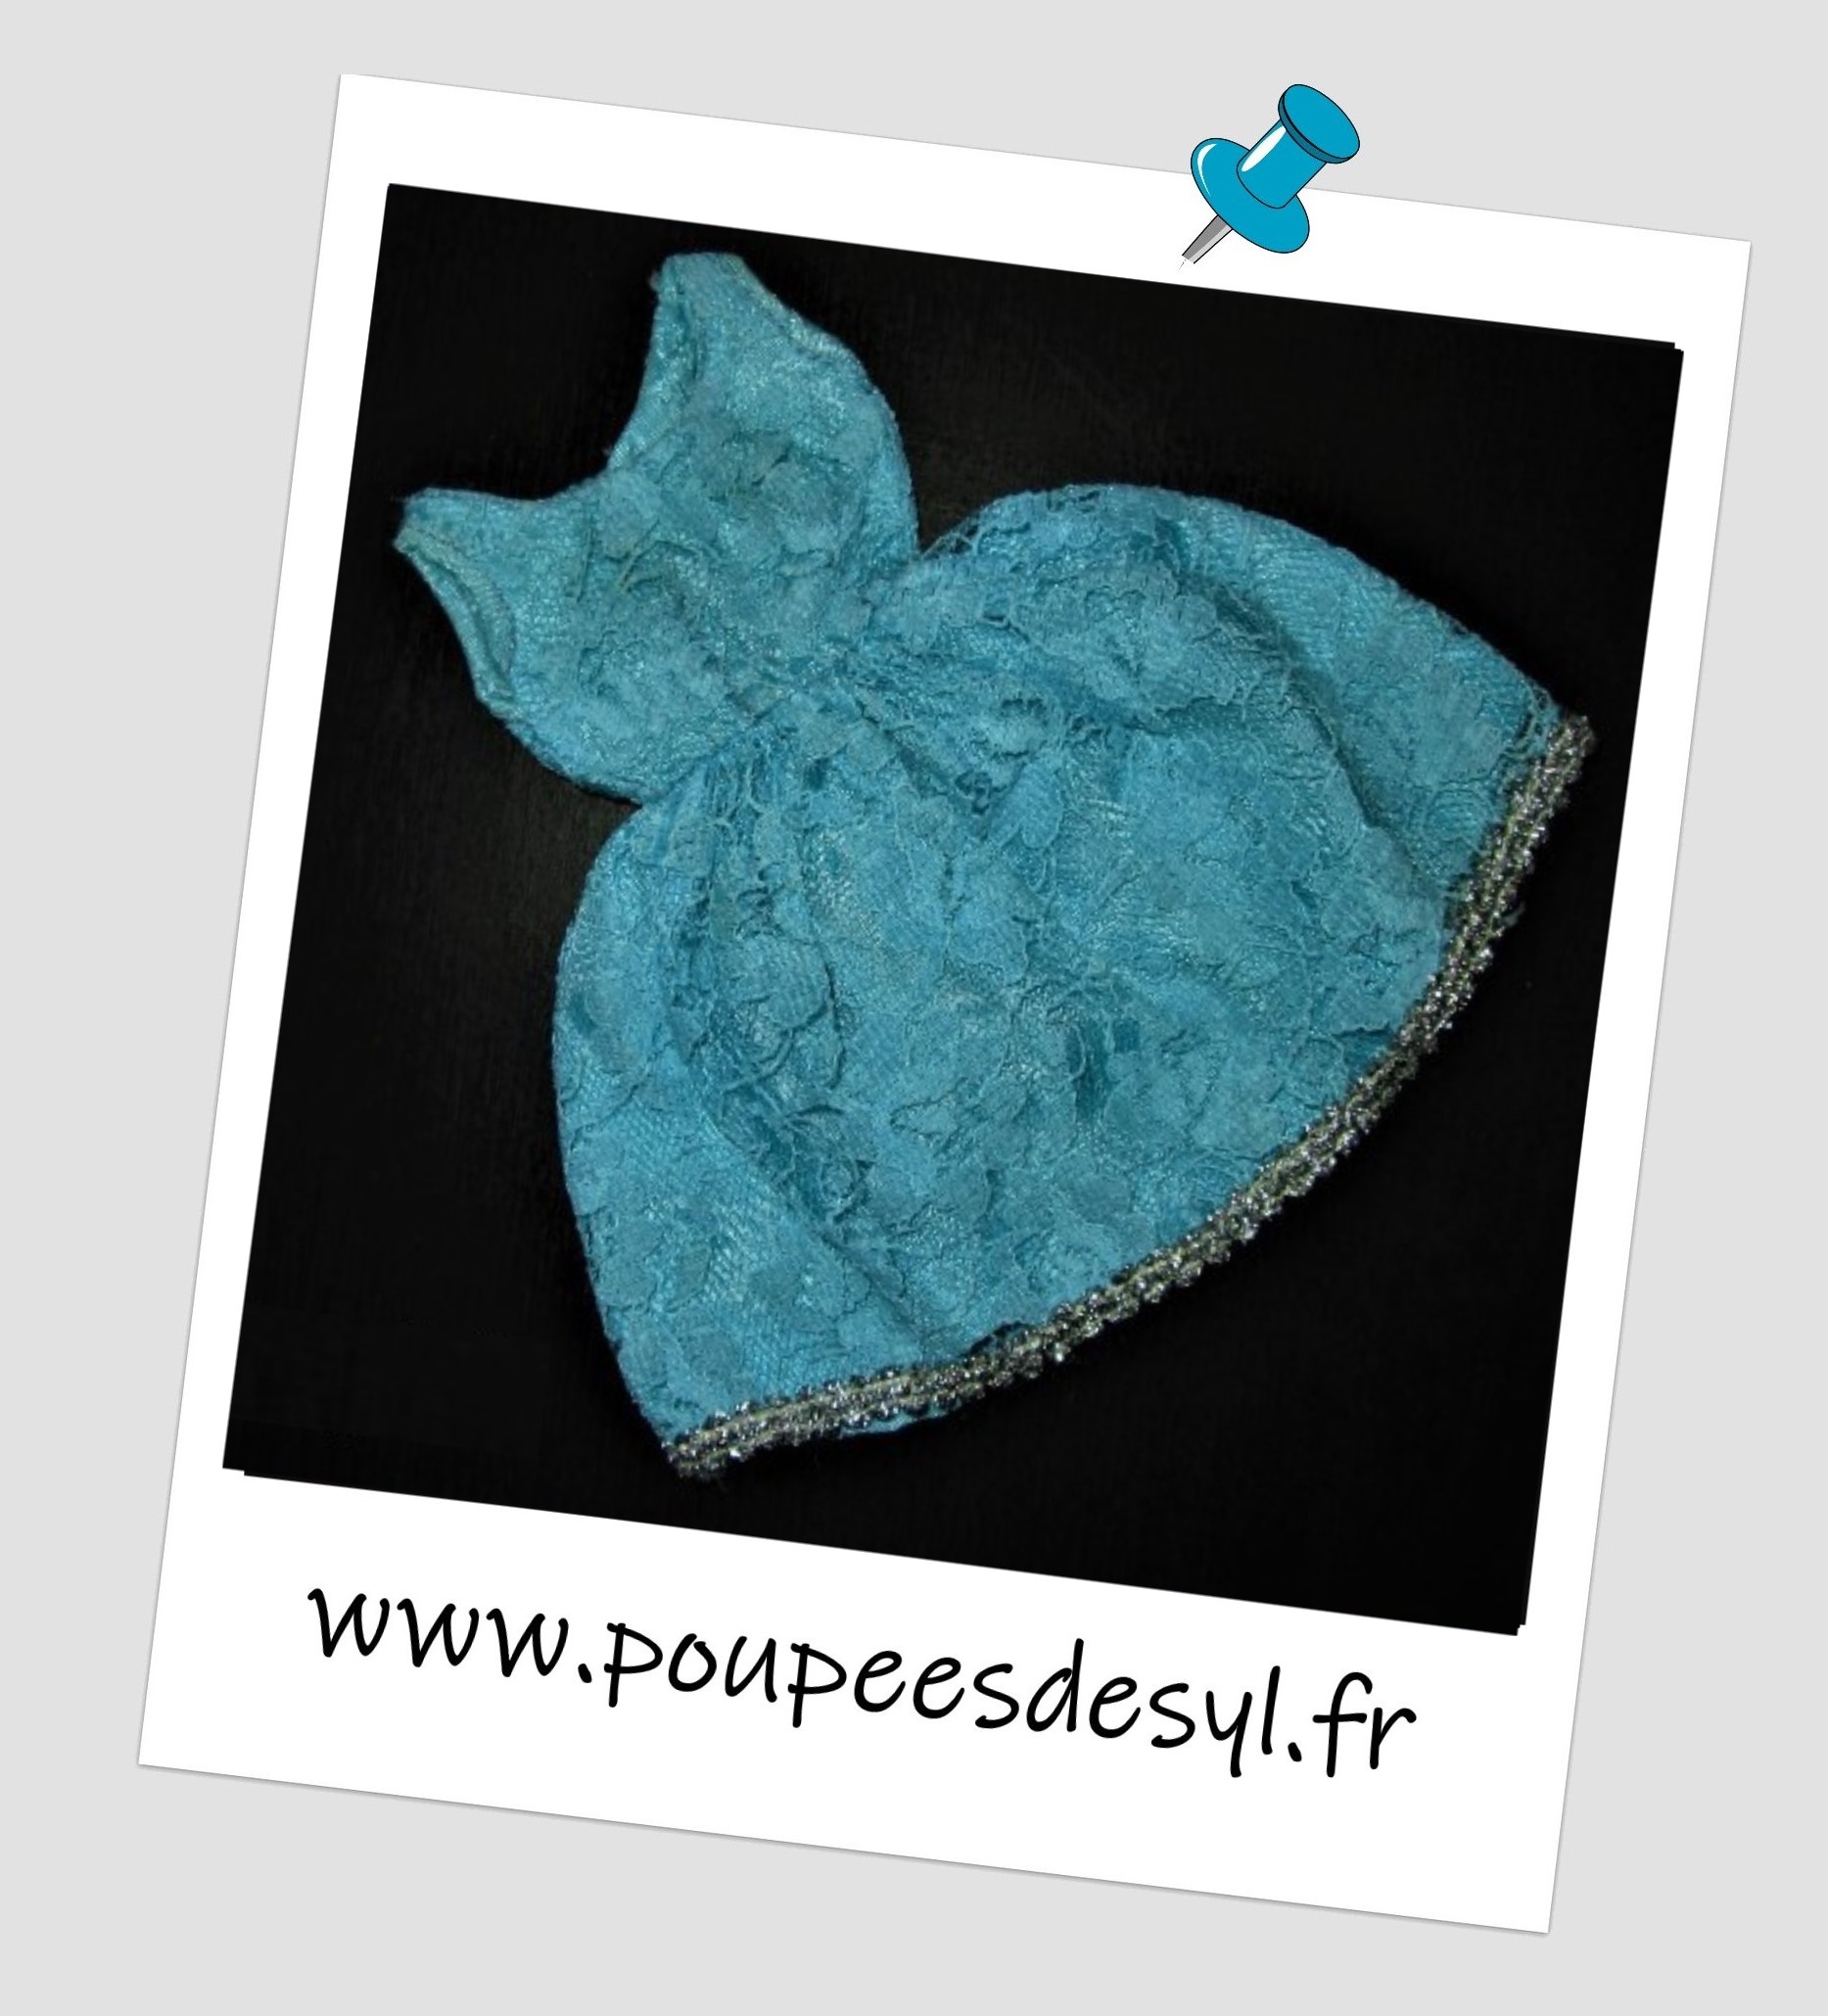 TRESSY BELLA – Superbe robe bleue dentelle dress – variante REVEUSE ???